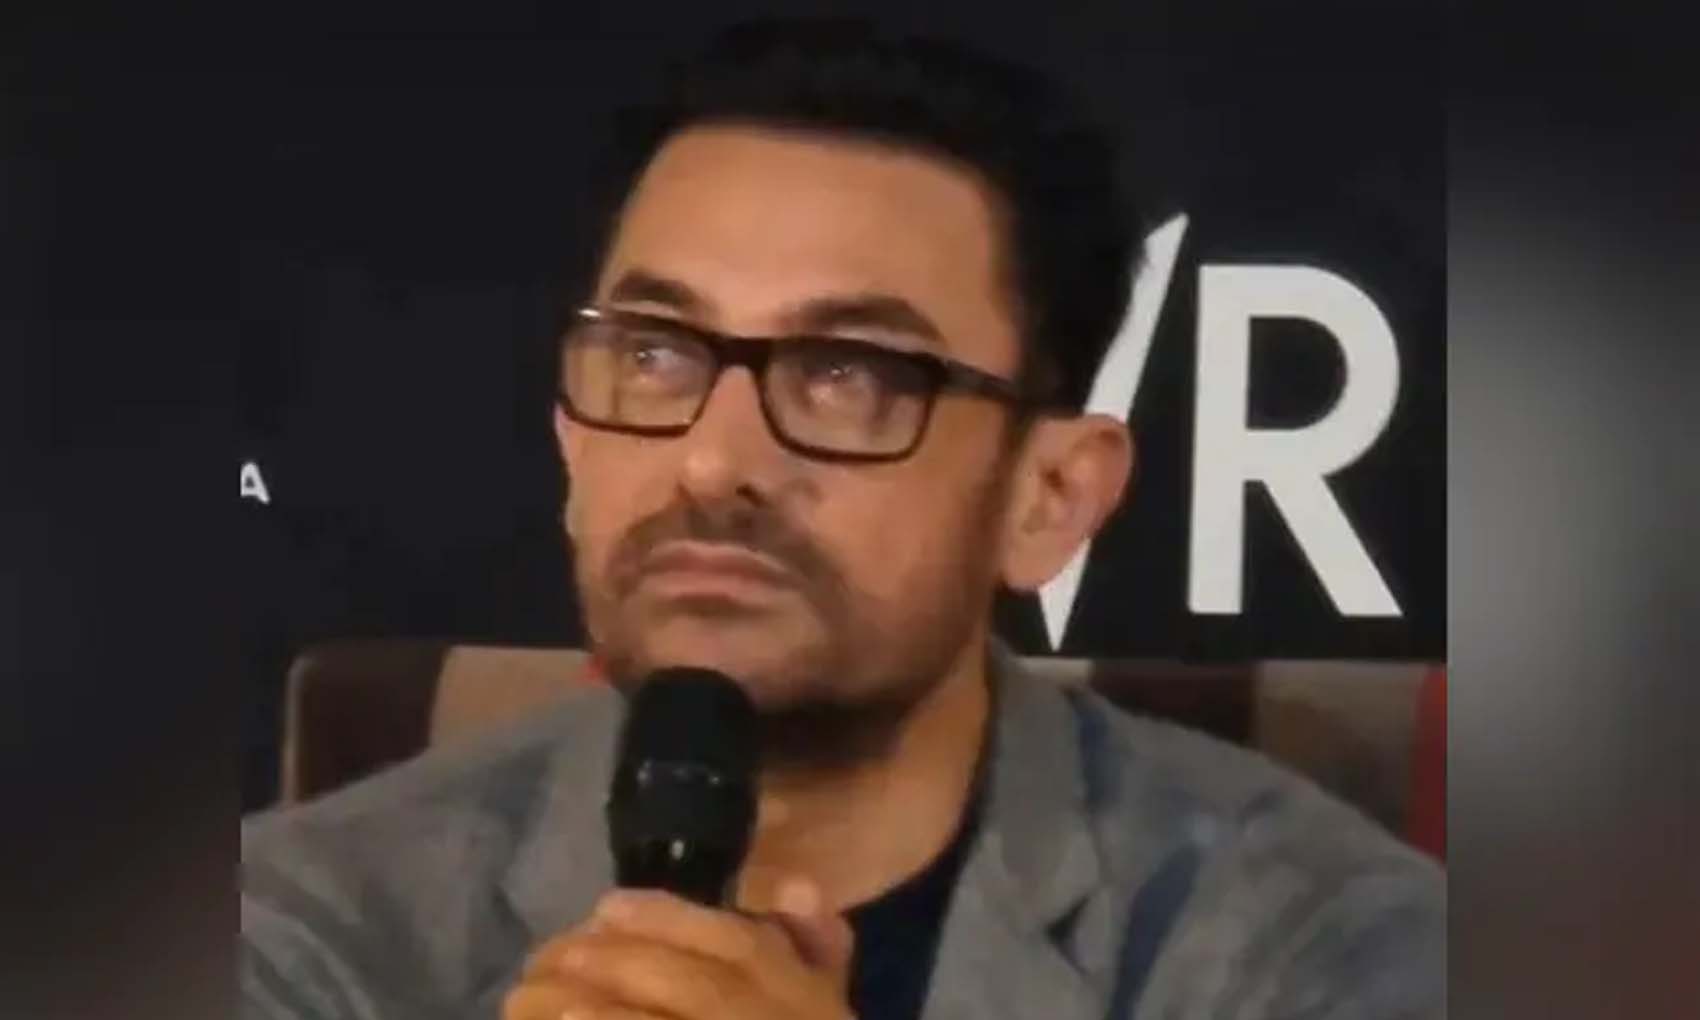 कल रिलीज होगी ‘लाल सिंह चड्ढा’ और आज माफ़ी मांग रहे हैं आमिर खान, बोले- ‘मुझे माफ कर दो’, देखें वीडियो